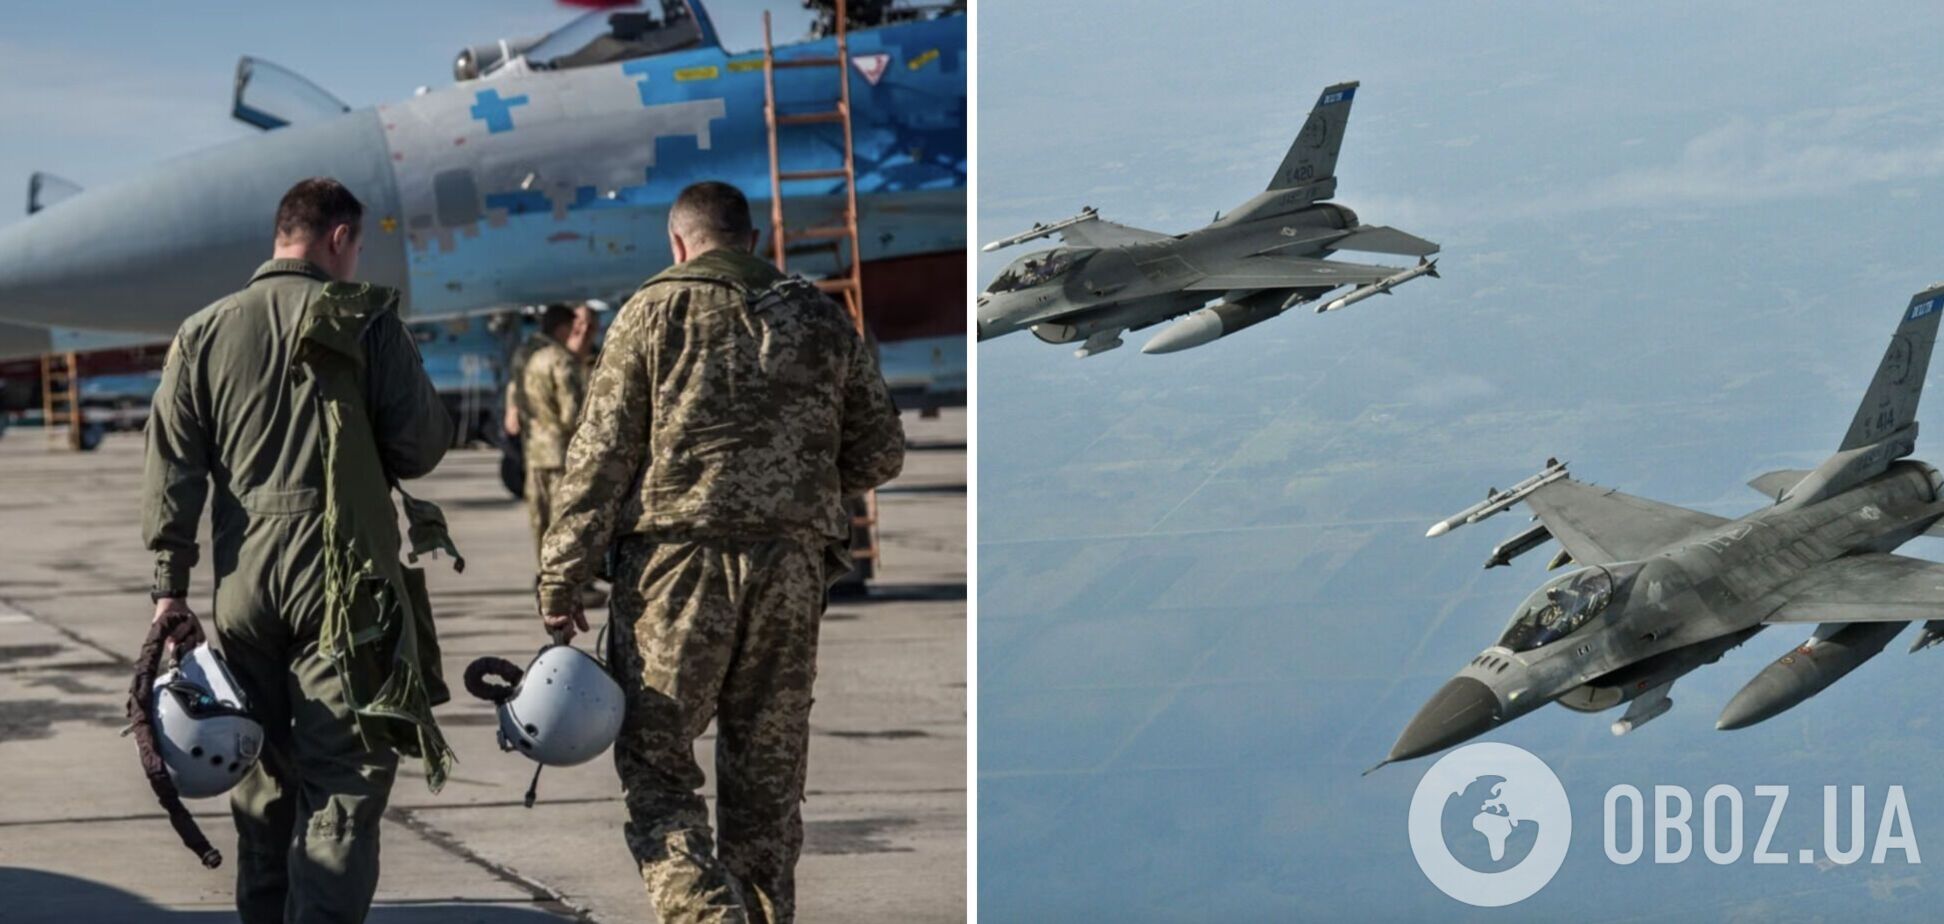 Українські пілоти прибули до США для занять на симуляторах літаків F-16 – NBC News